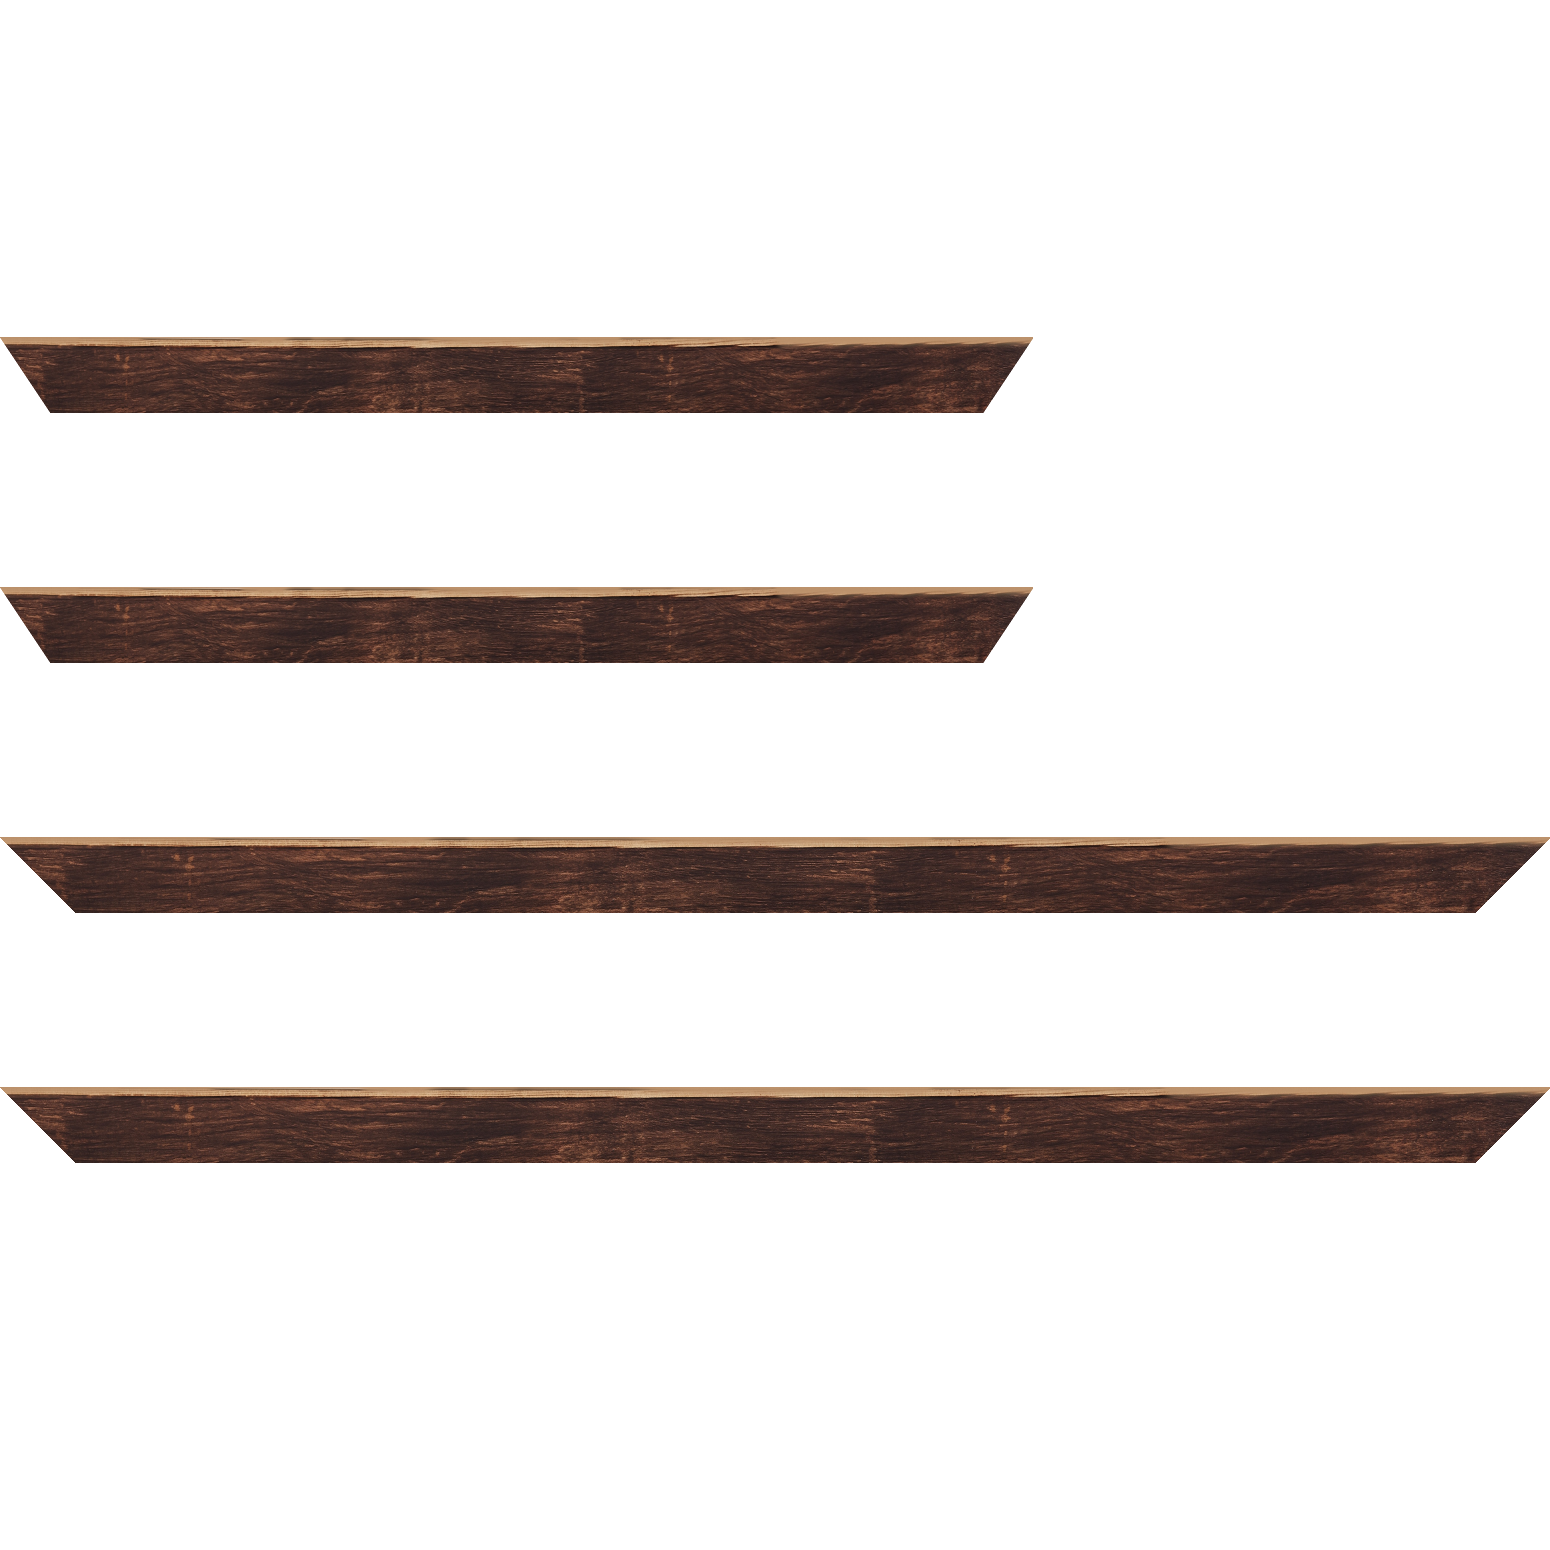 Baguette bois profil arrondi en pente plongeant largeur 2.4cm couleur marron effet ressuyé, angle du cadre extérieur filet naturel - 35x24